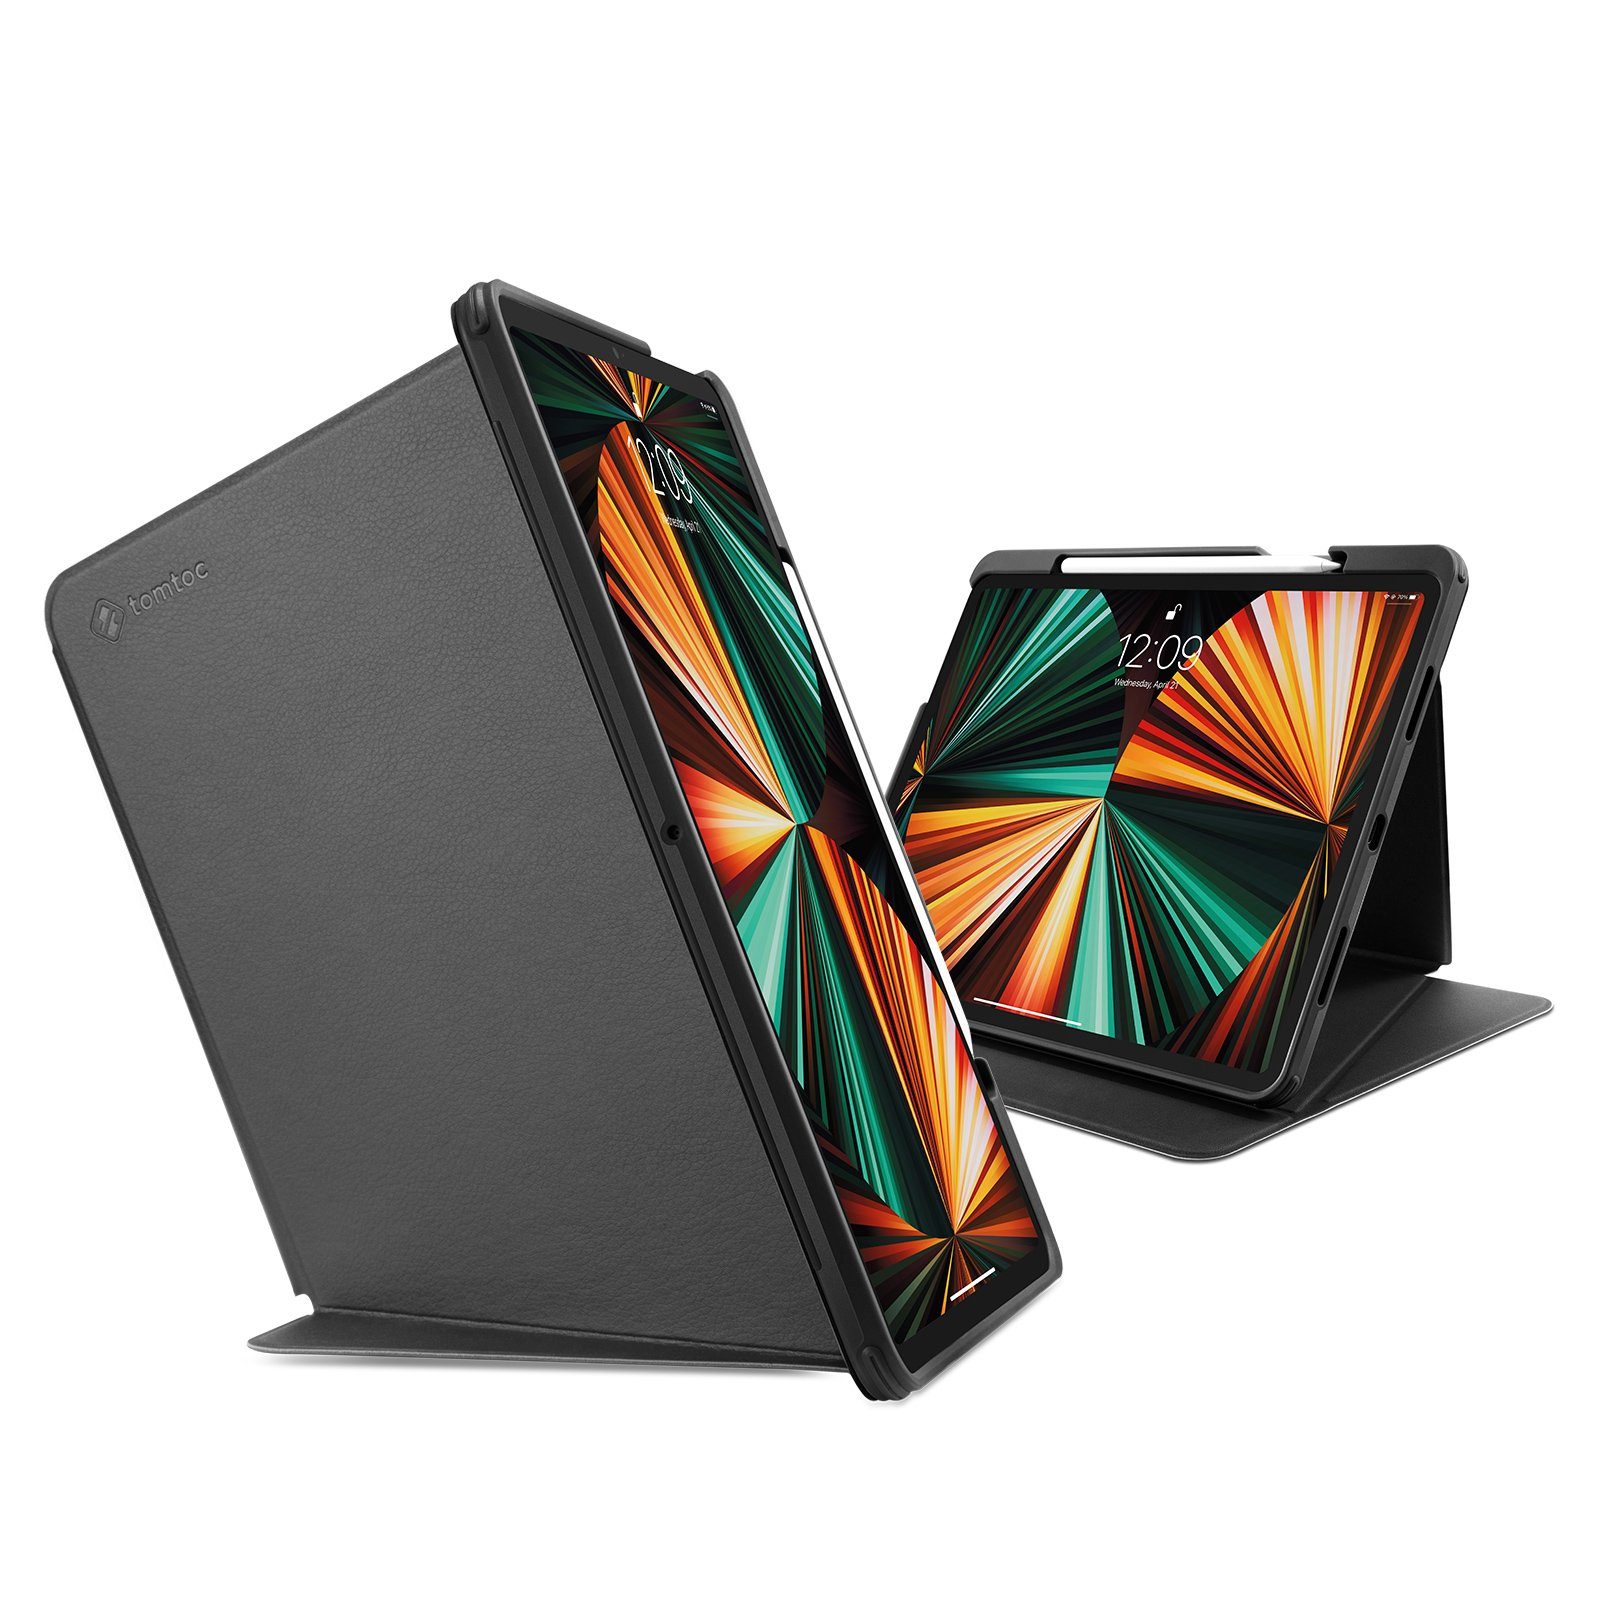 2018-2021 mit Magic Keyboard / Smart Keyboard Folio / Logitech Slim Folio Pro Case 3., 4. und 5. Generation Zubehör Case Schutzhülle tomtoc Filz Tasche für 12,9-Zoll iPad Pro 